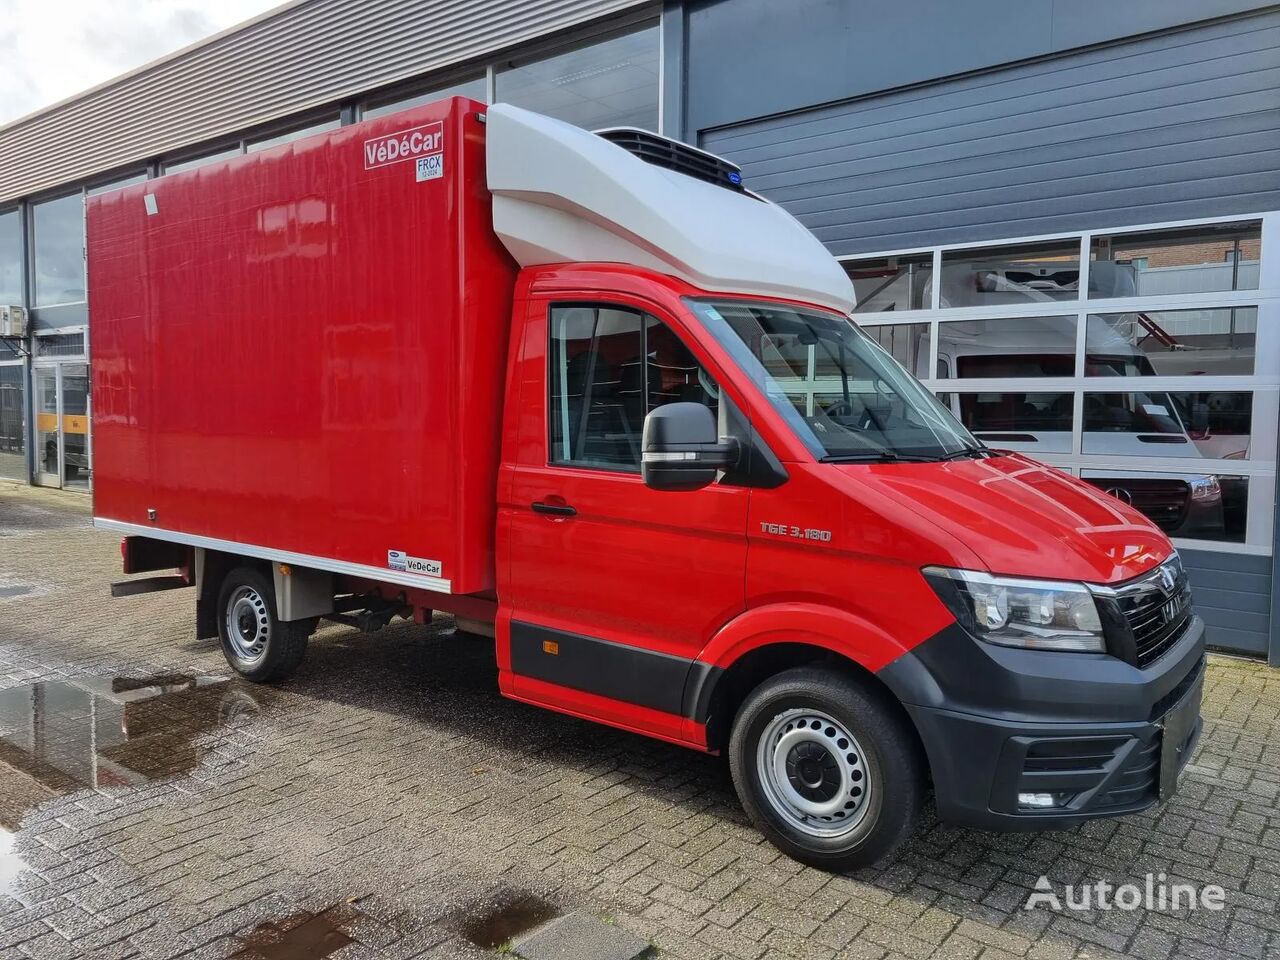 MAN TGE 3.180 Kuhlkoffer/ Carrier -20/+20/ ATP Cert. camión frigorífico < 3.5t